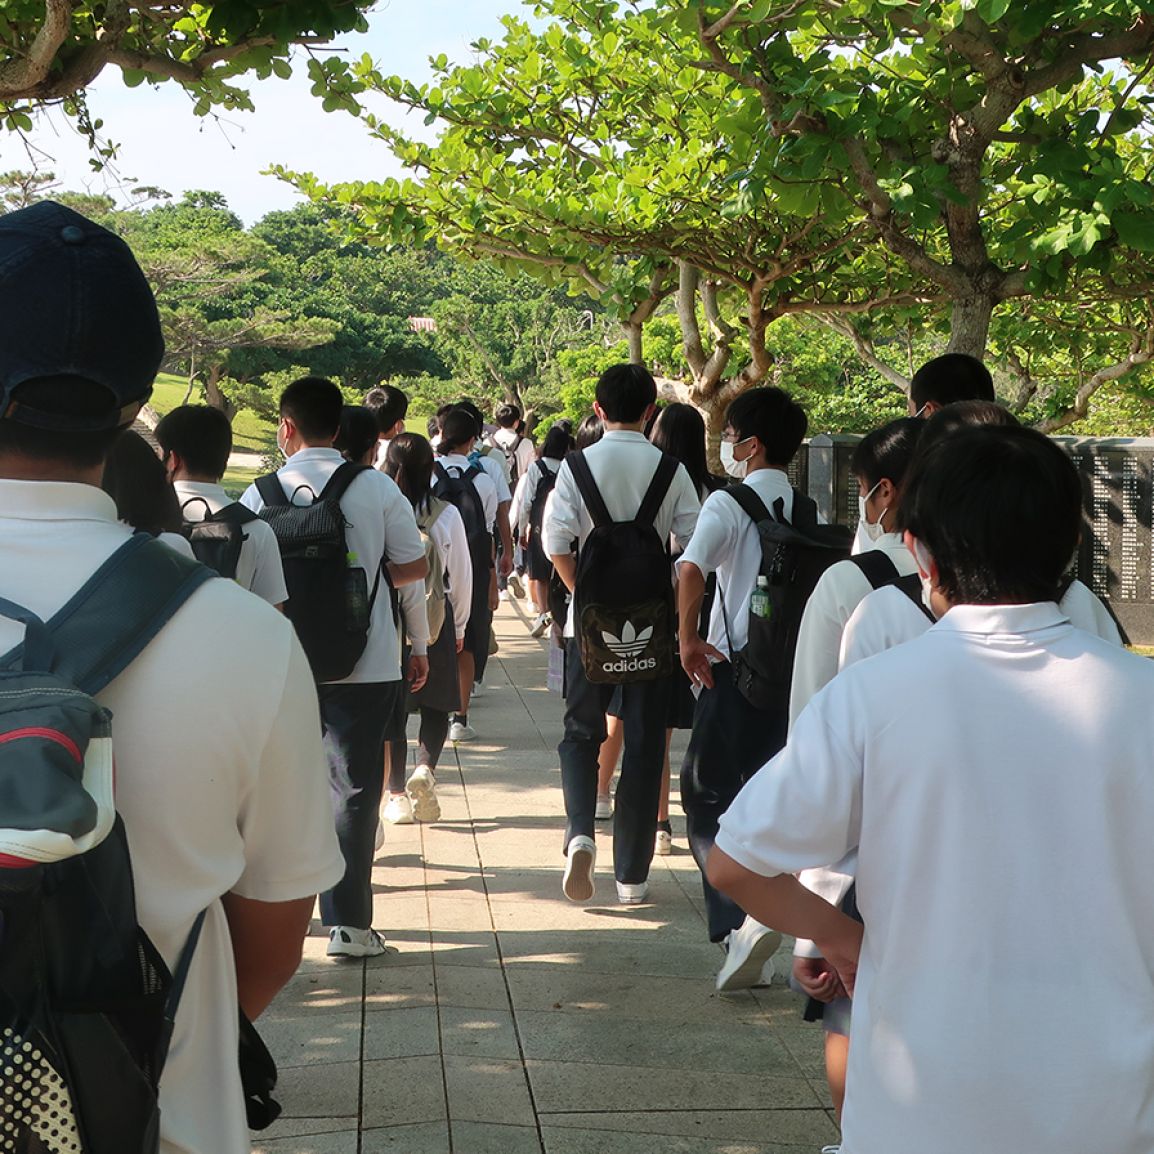 おきなわ修学旅行ナビ 旅行会社や教職員のための 沖縄修学旅行 専門サイト